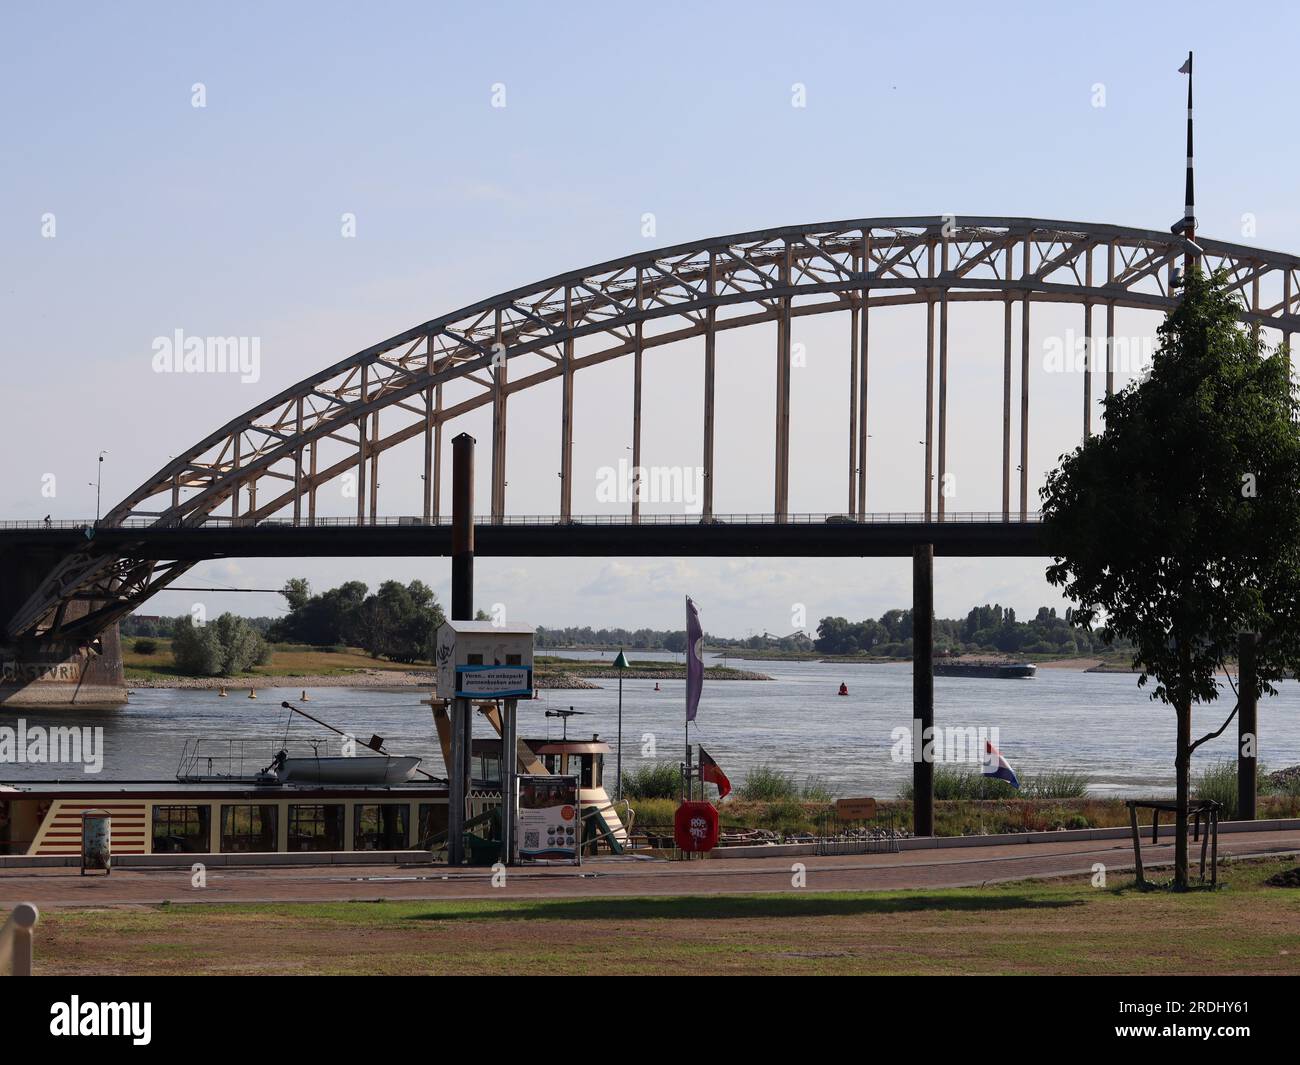 Waalbrug Bridge in Nijmegen, The Netherlands Stock Photo